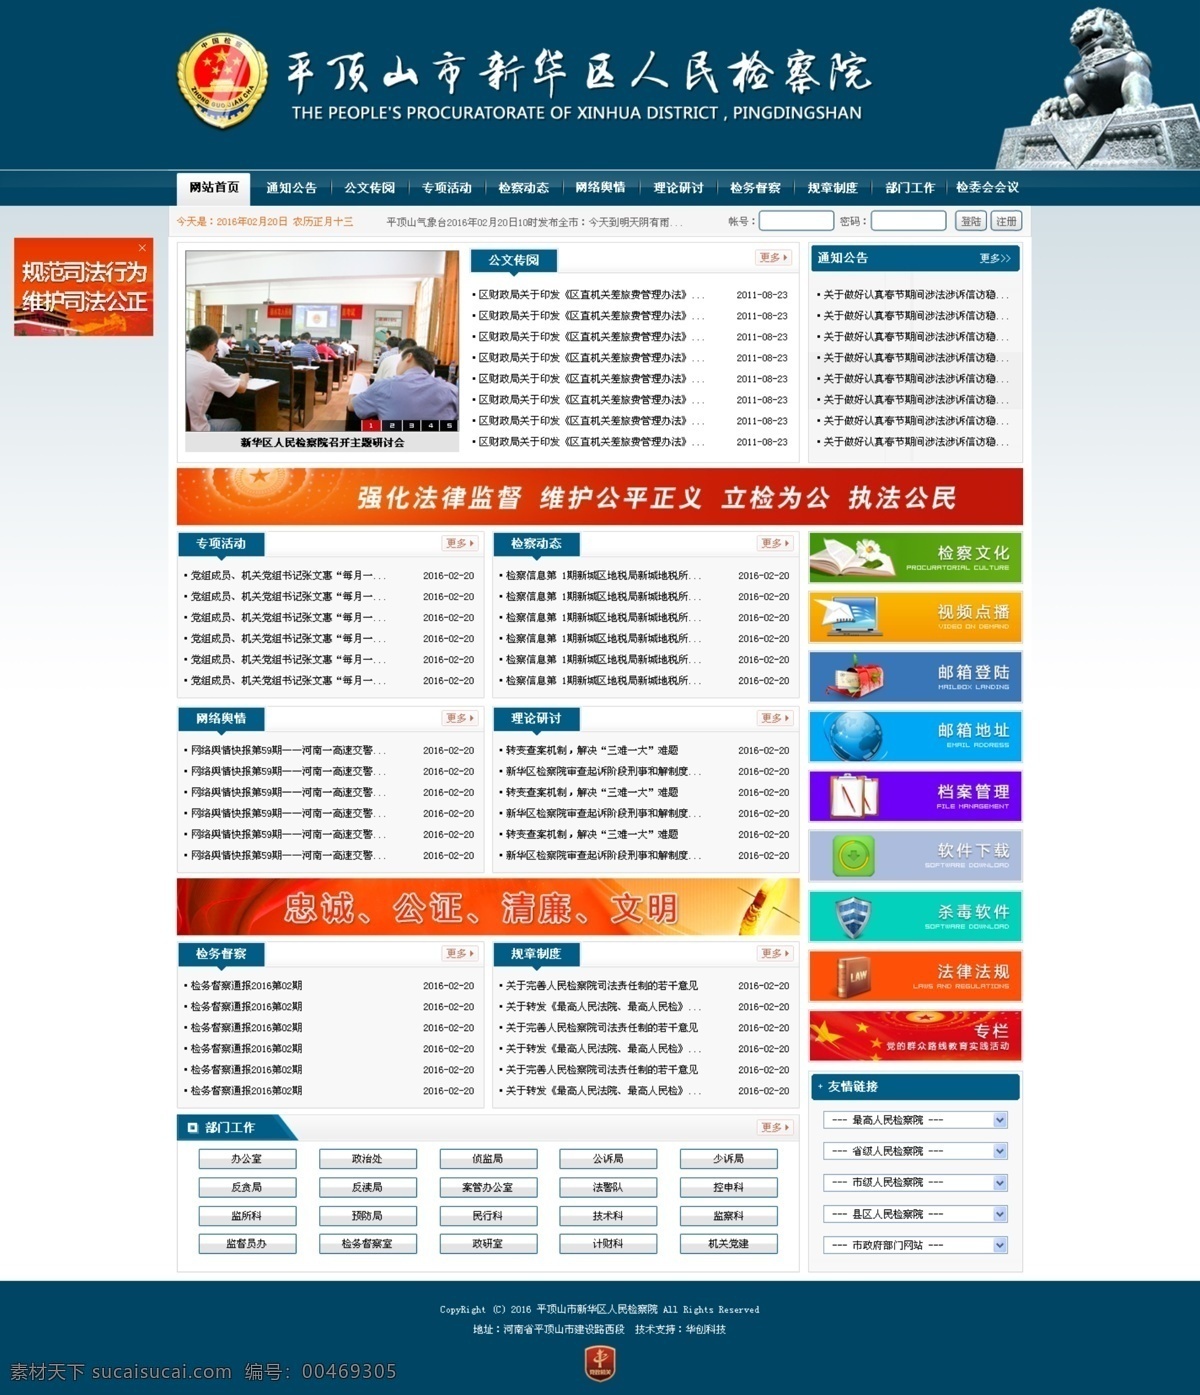 检察院 网站首页 平顶山 新华区 人民检察院 网站 首页 模版 web 界面设计 中文模板 白色